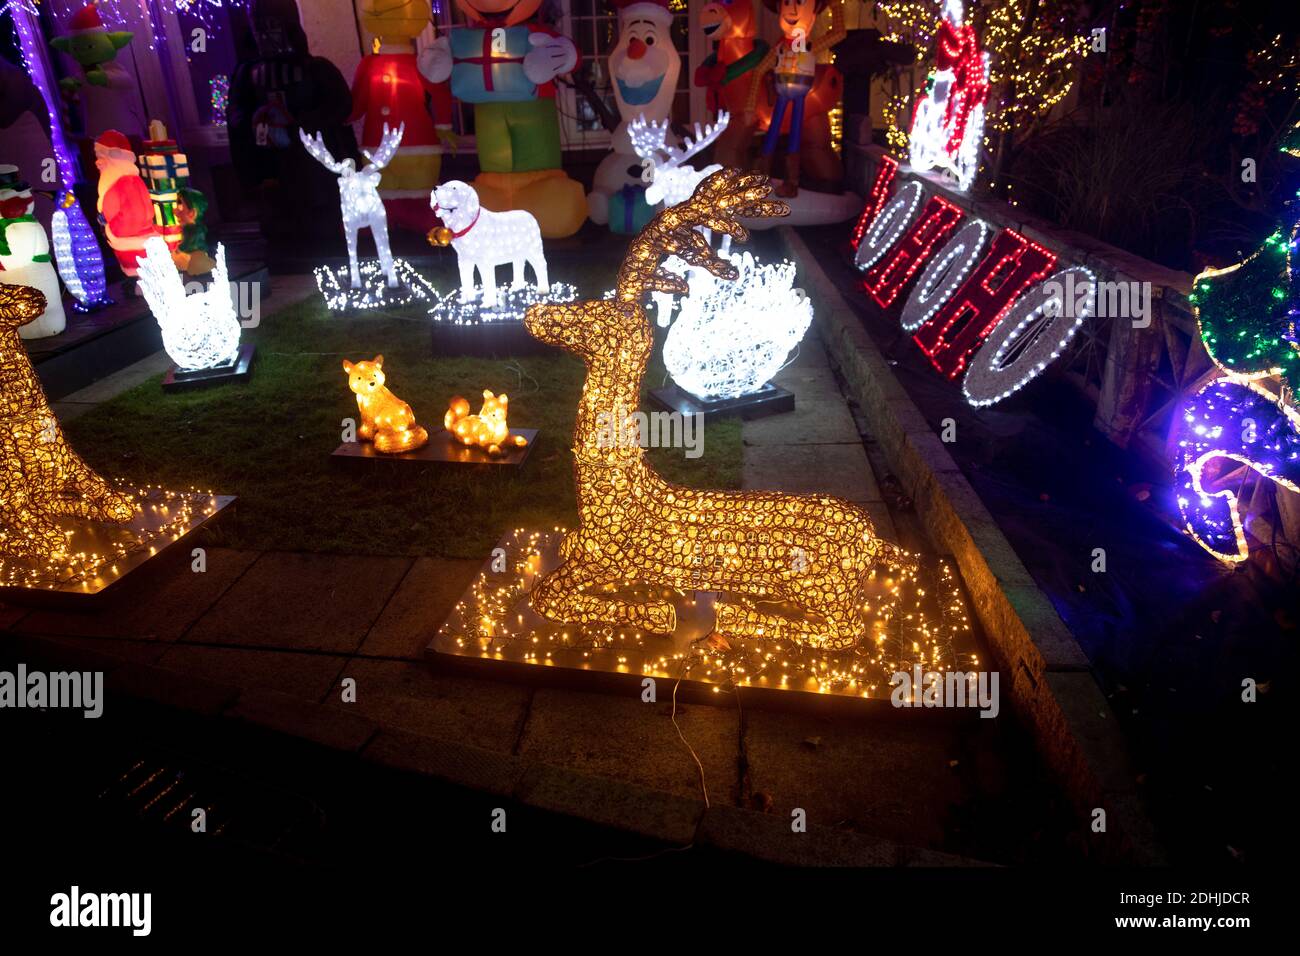 North London Doppelhaushälfte mit erstaunlichen Satz von weihnachtsbeleuchtung. Darunter Figur von Mickey Mouse, Woody aus Toy Story, Darth Vader, Spiderman Stockfoto